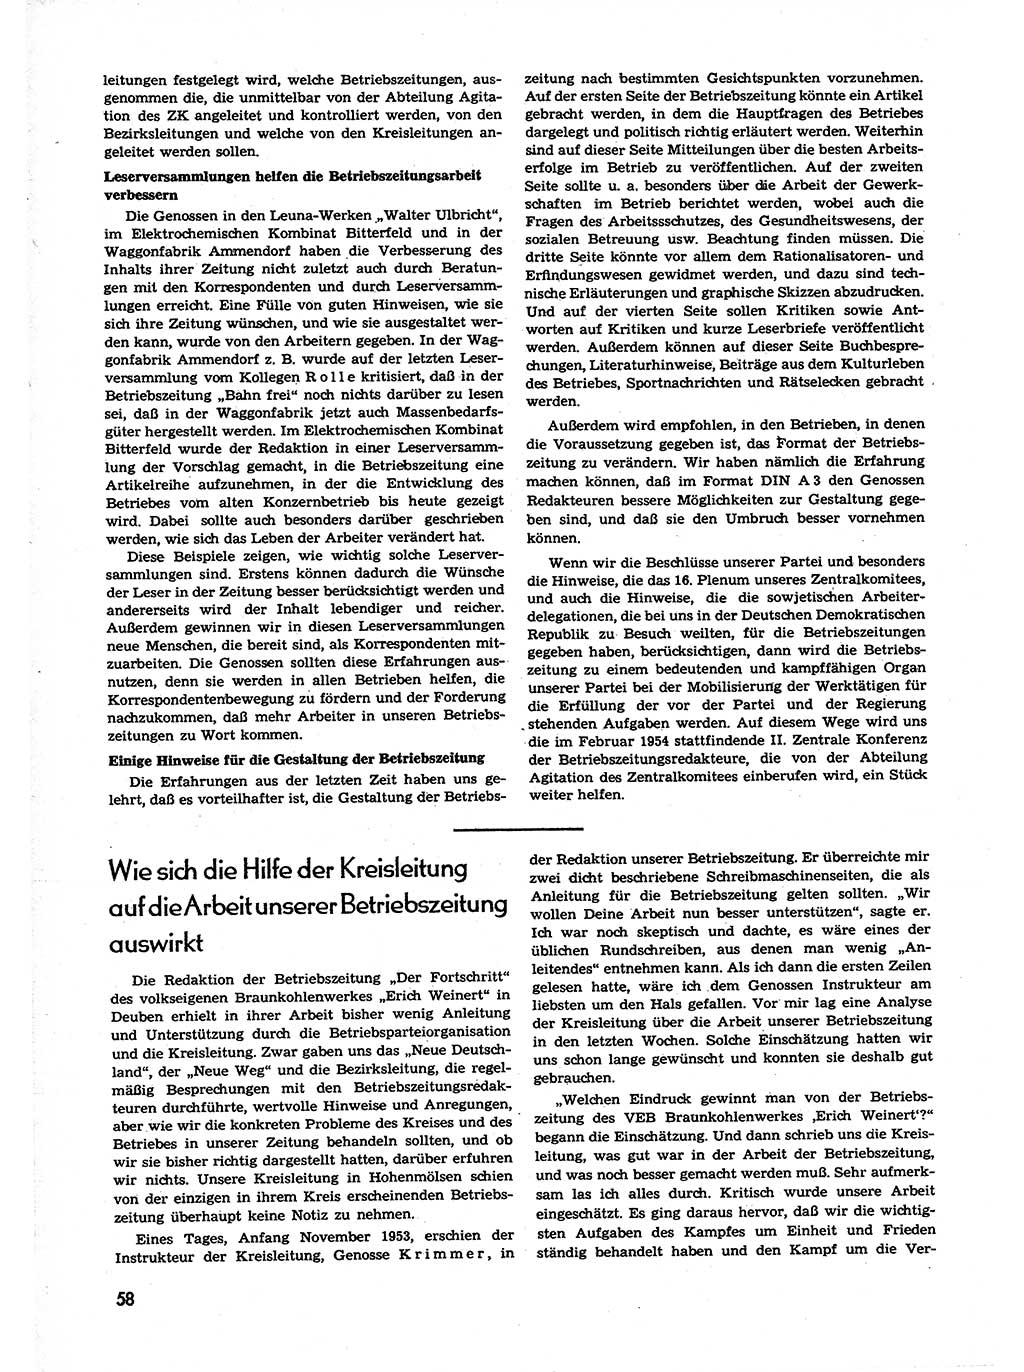 Neuer Weg (NW), Organ des Zentralkomitees (ZK) der SED (Sozialistische Einheitspartei Deutschlands) für alle Parteiarbeiter, 9. Jahrgang [Deutsche Demokratische Republik (DDR)] 1954, Heft 1/58 (NW ZK SED DDR 1954, H. 1/58)